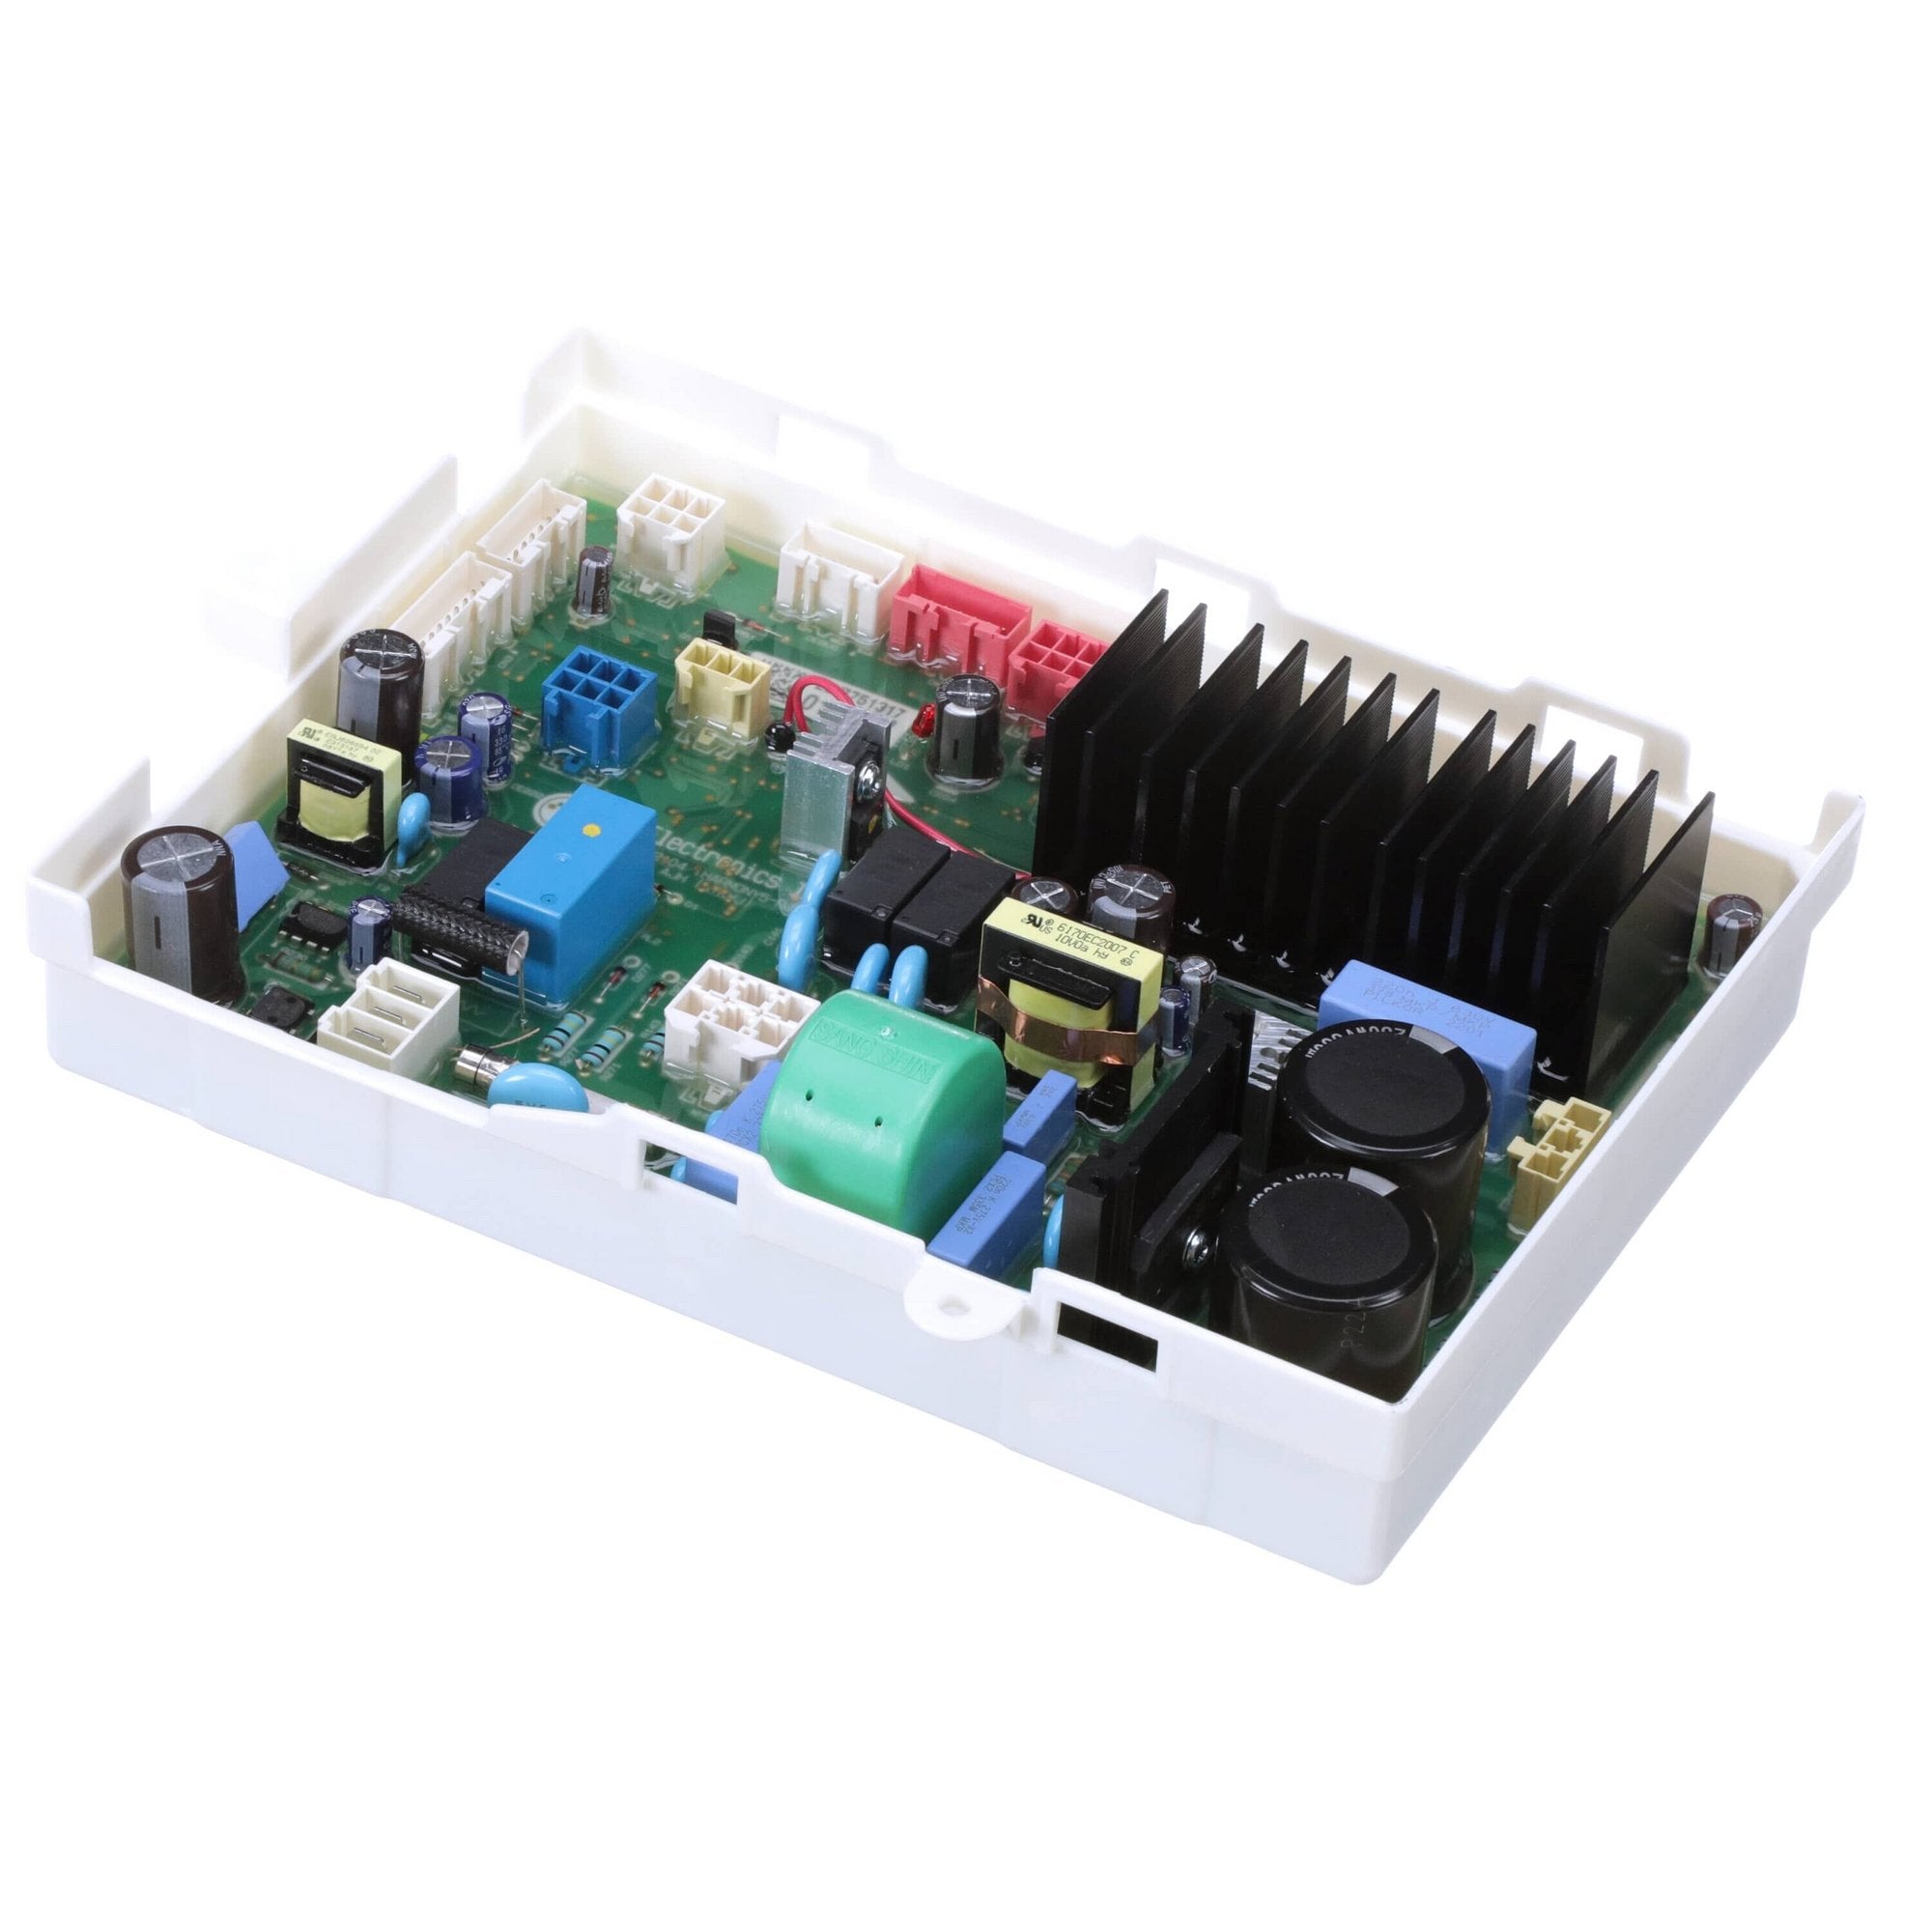 EBR75131701 - LG Washer Control Board New